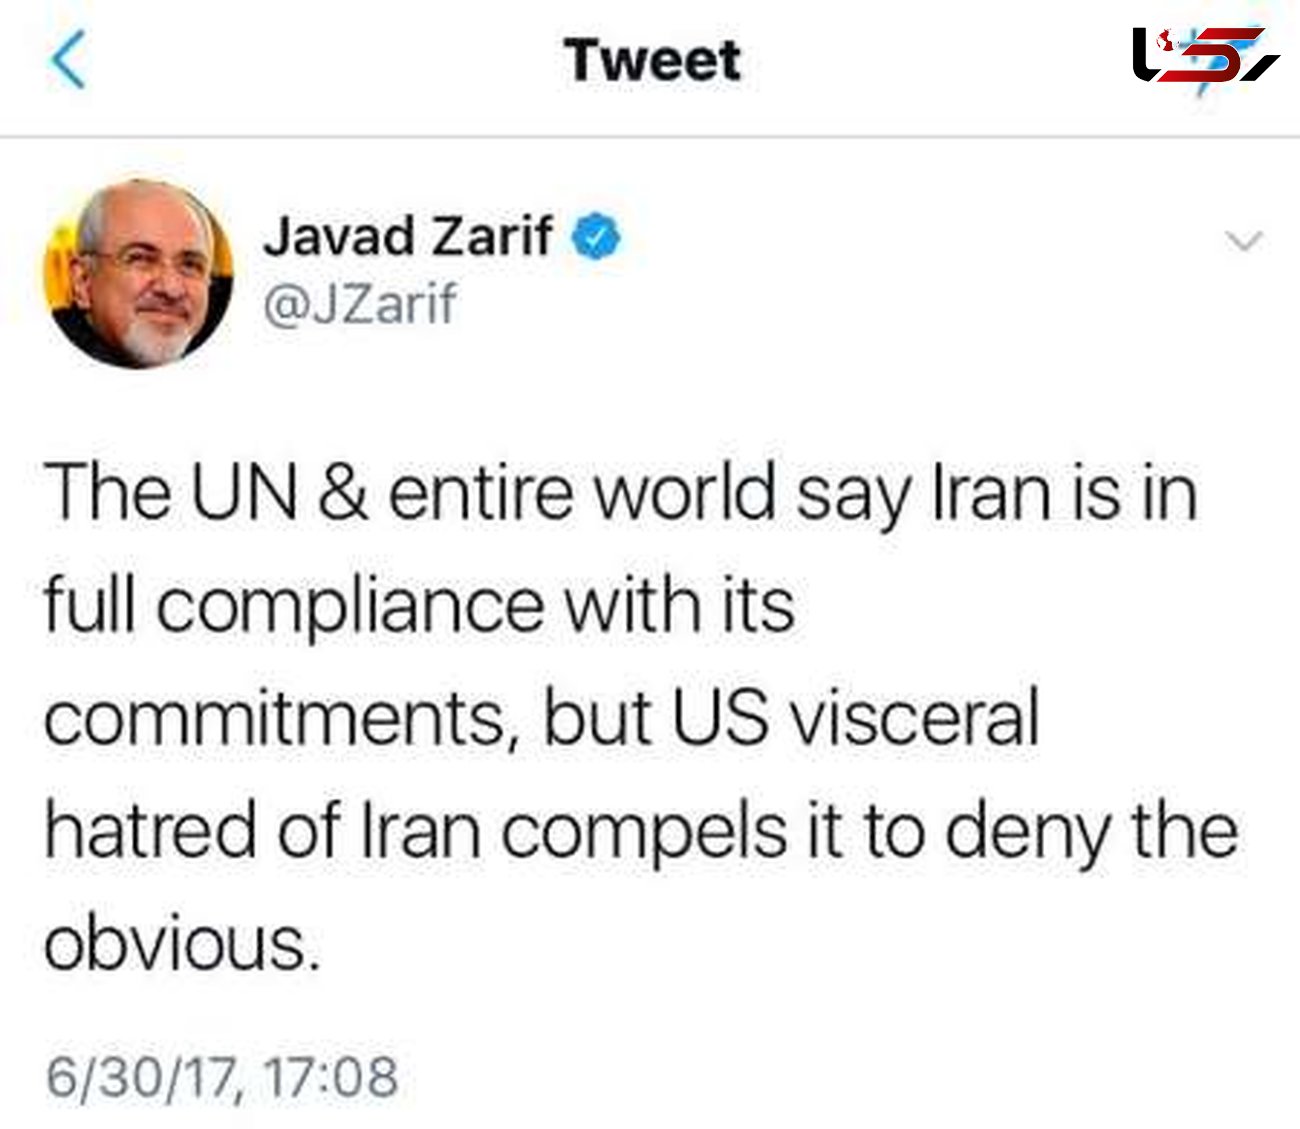 ظریف در یادداشت توئیتری: دنیا می گوید تهران متعهد است اما کاخ سفید انکار می کند 